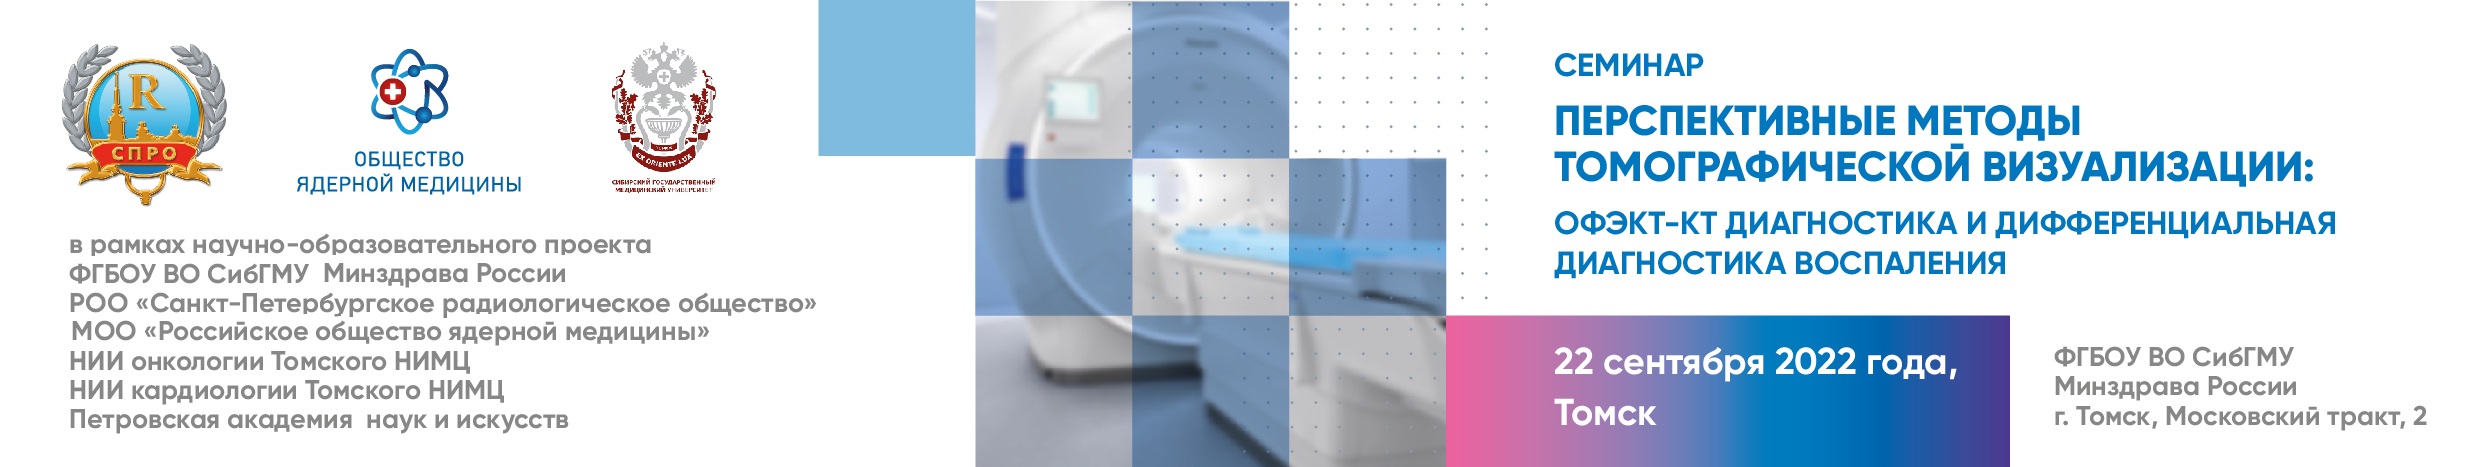 Семинар "Перспективные методы томографической визуализации: ОФЭКТ-КТ диагностика и дифференциальная диагностика воспаления"